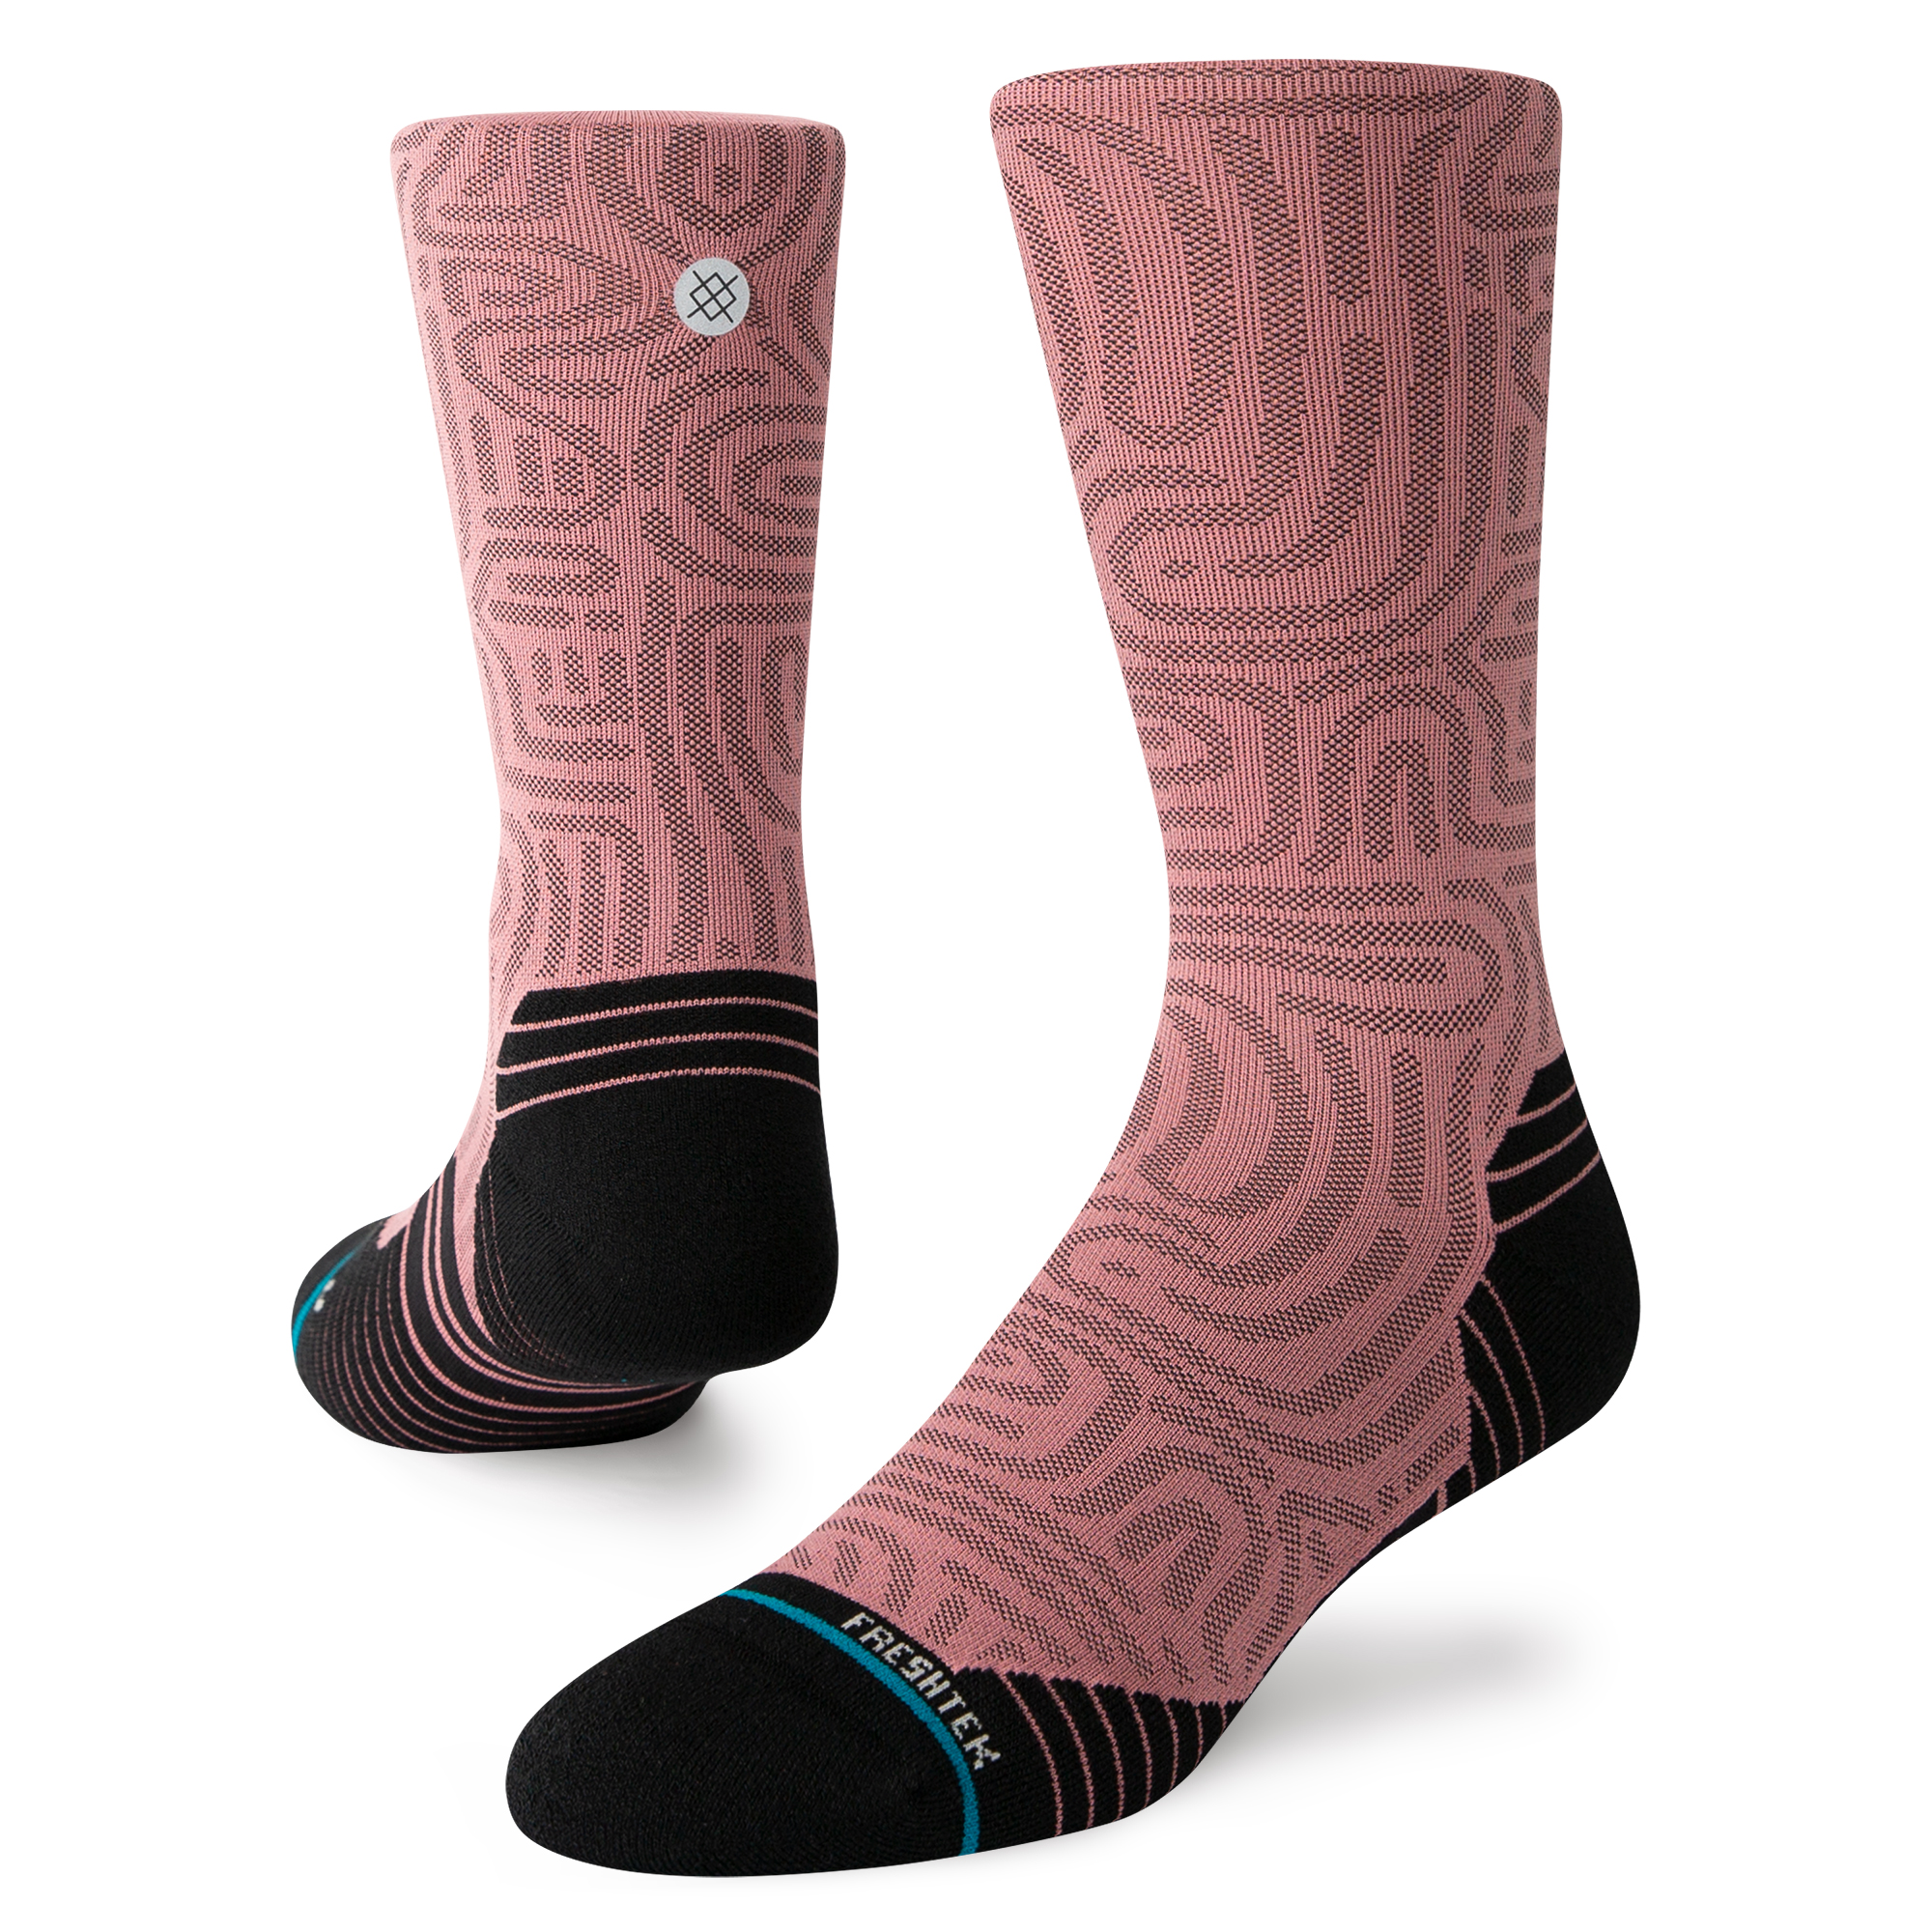 Daily 3 Pack Quarter Socks - Multi Pink